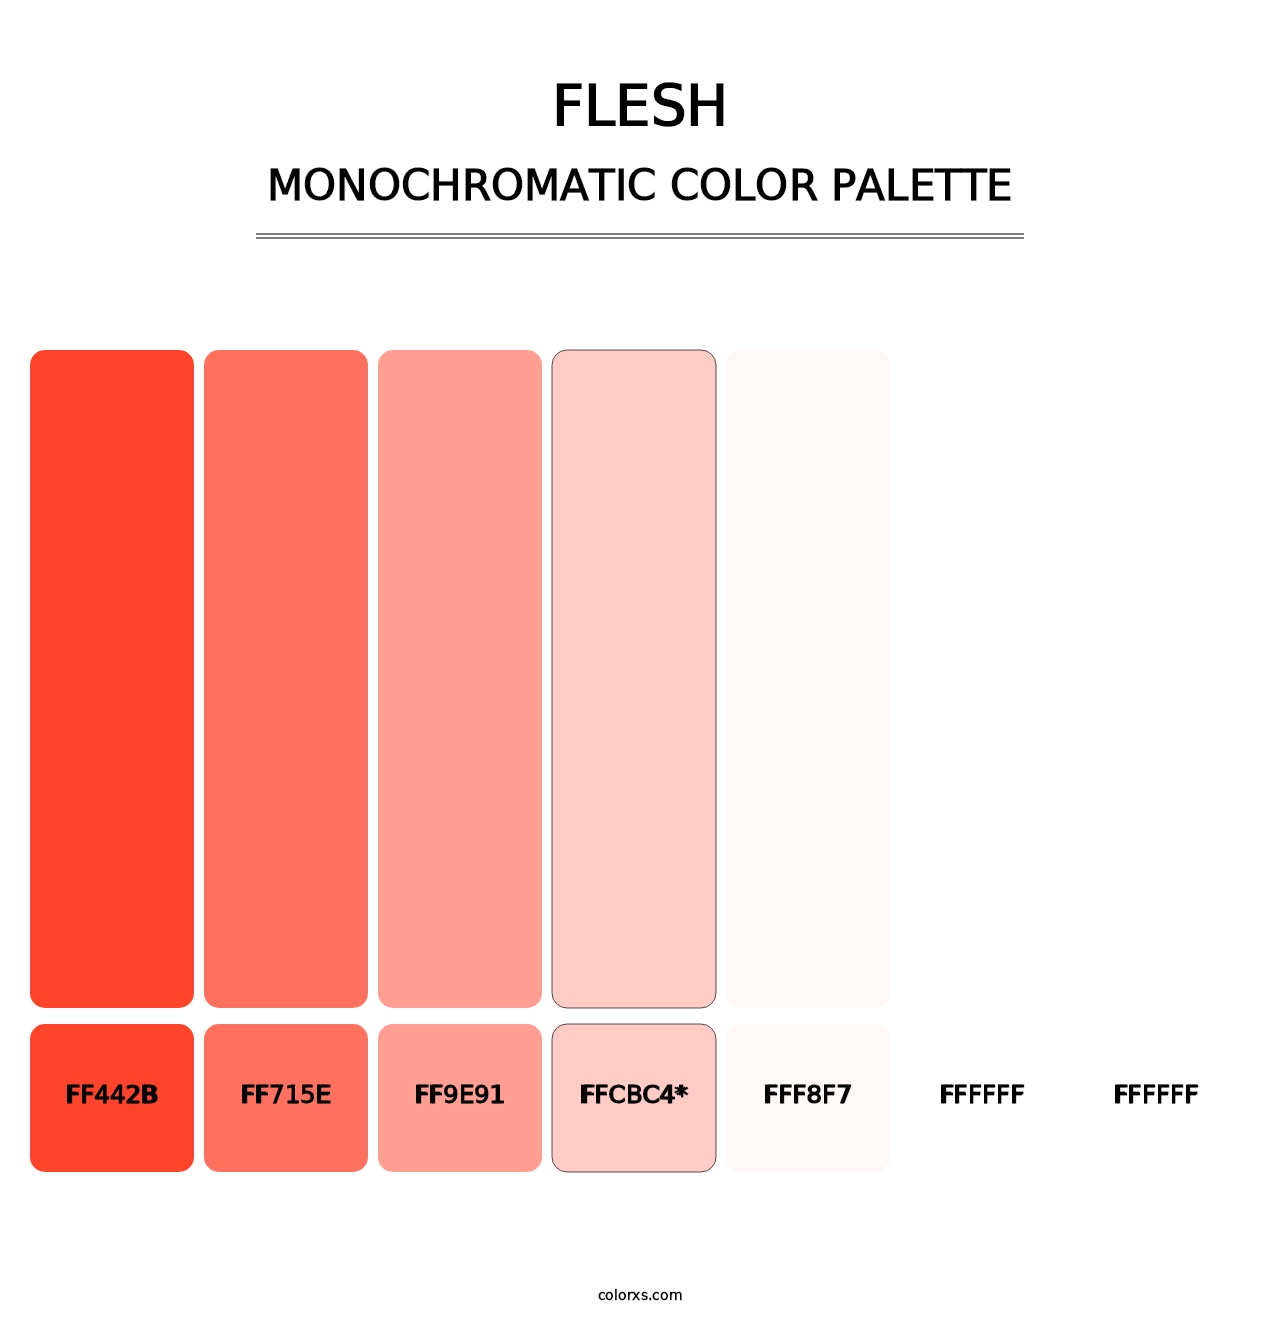 Flesh - Monochromatic Color Palette